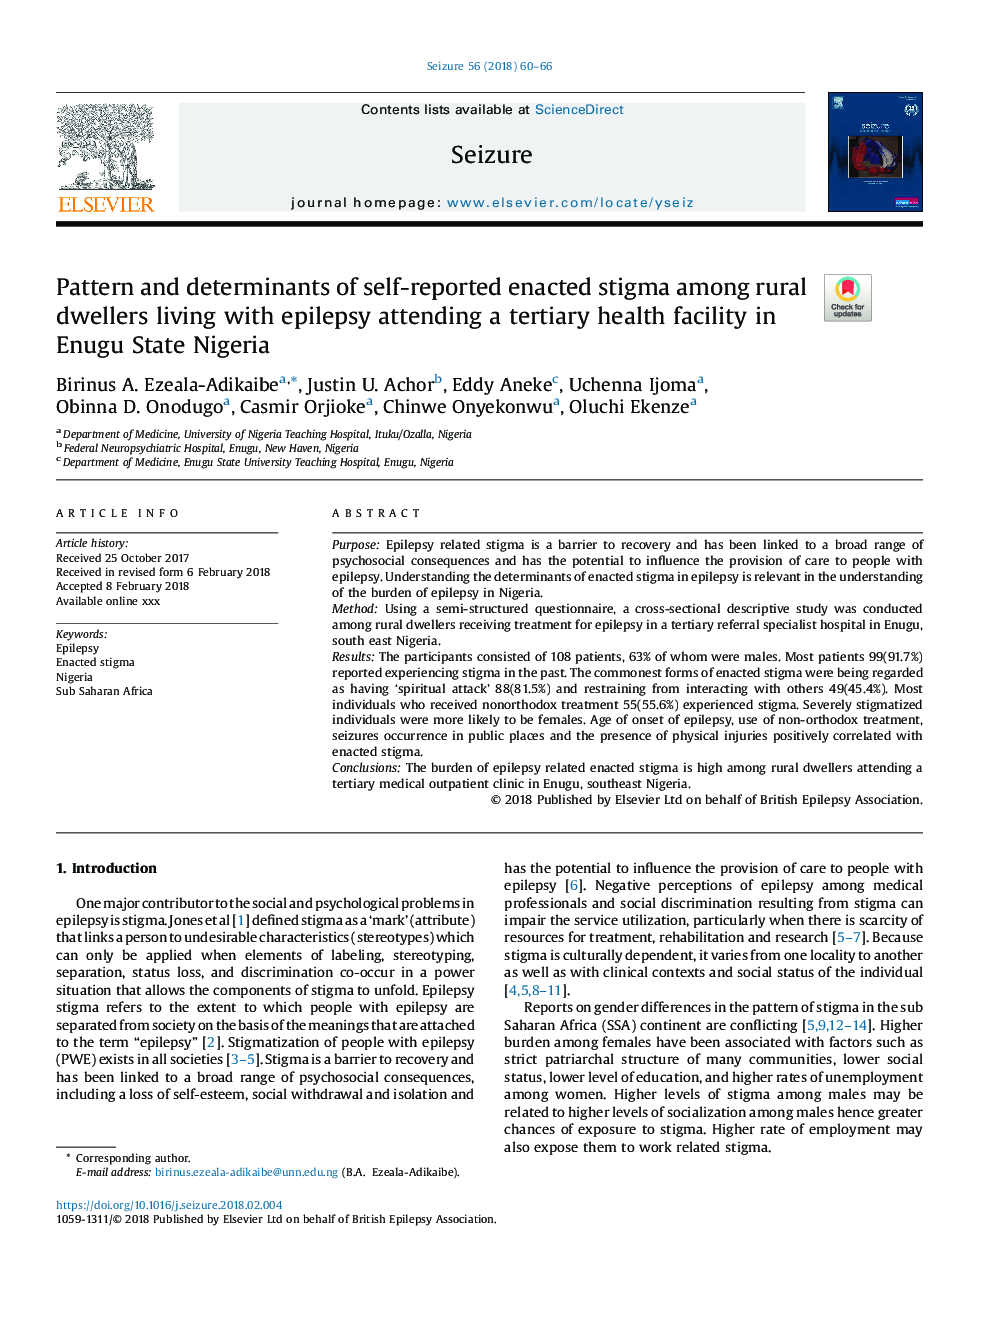 الگوی و عوامل تعیین کننده خودمحیط زدایی در میان ساکنین روستایی که مبتلا به صرع هستند و در یک مرکز بهداشتی عالی در ایالت انوگو نیجریه شرکت می کنند 